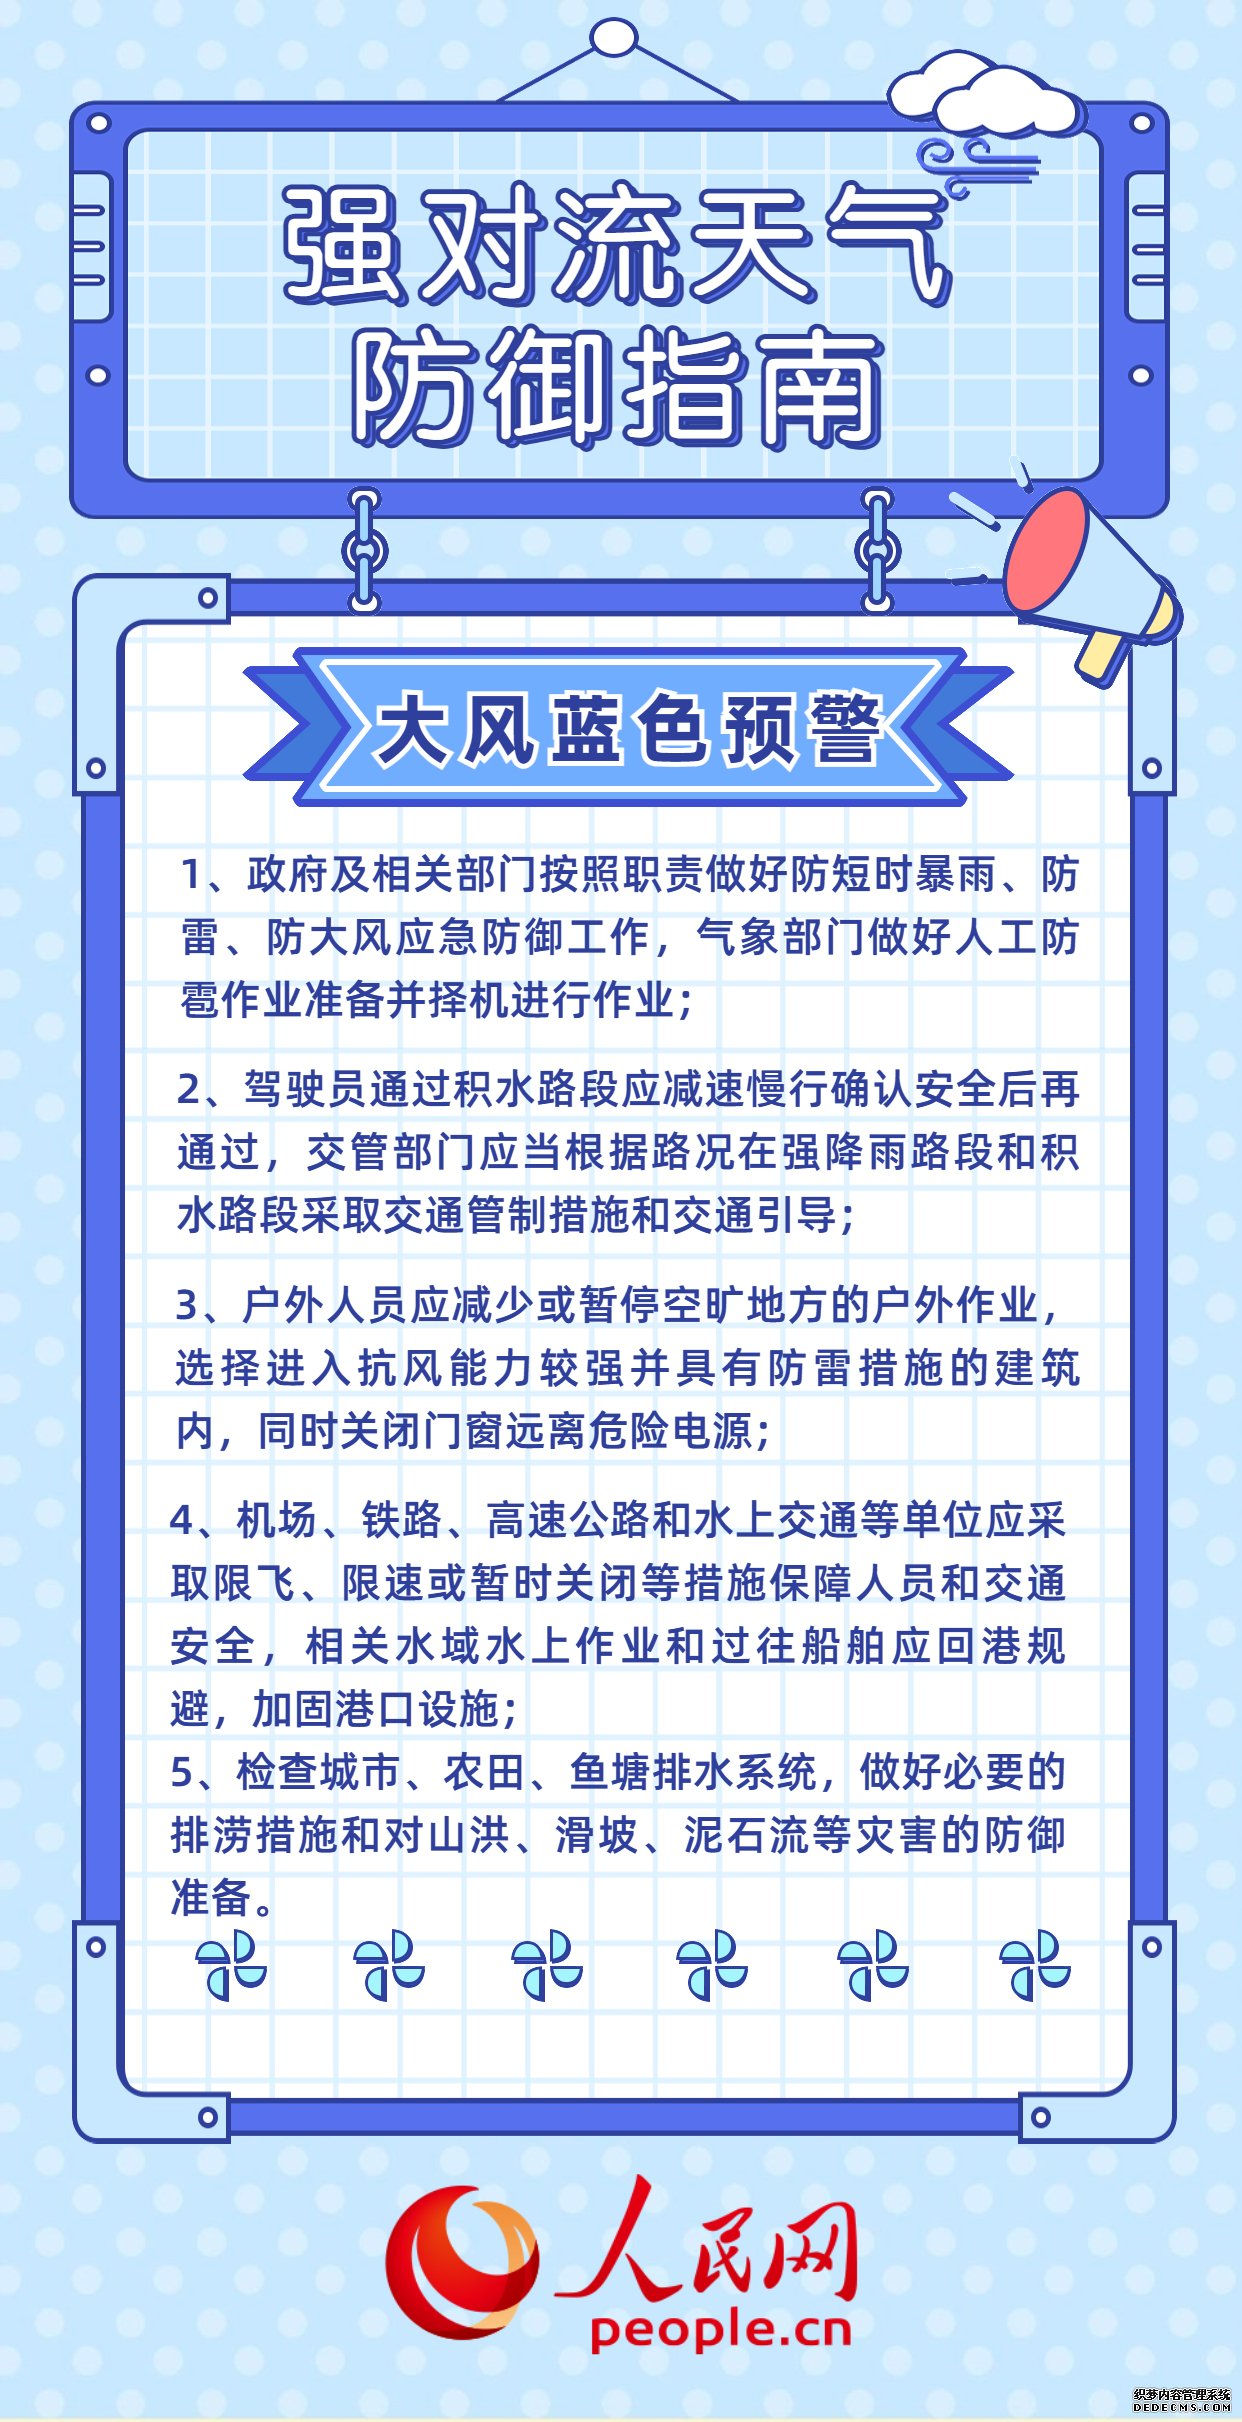 双预警齐发 山东上海等7省市部分地区有雷暴大风或冰雹